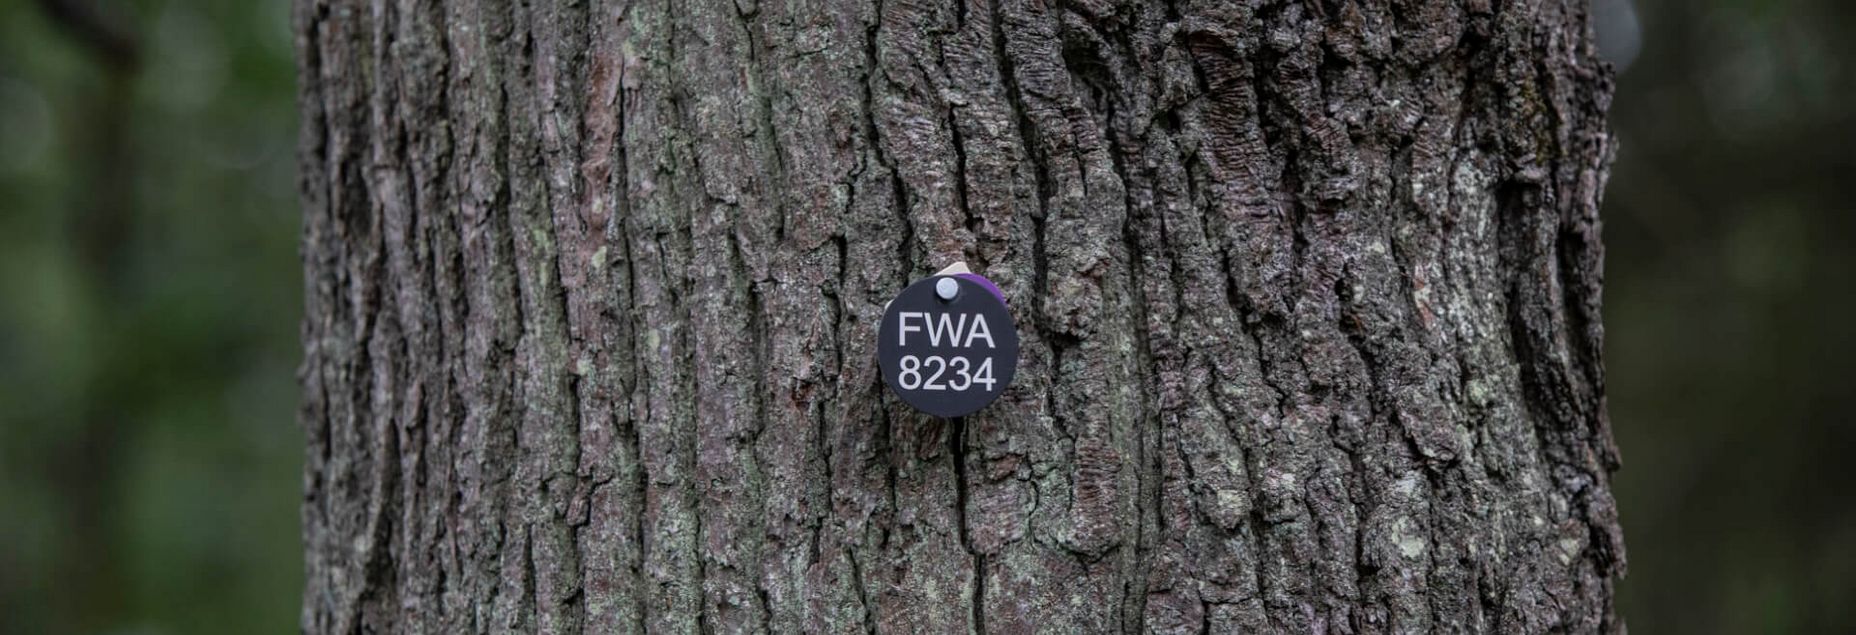 FriedWald-Onlineshop FWA 8234